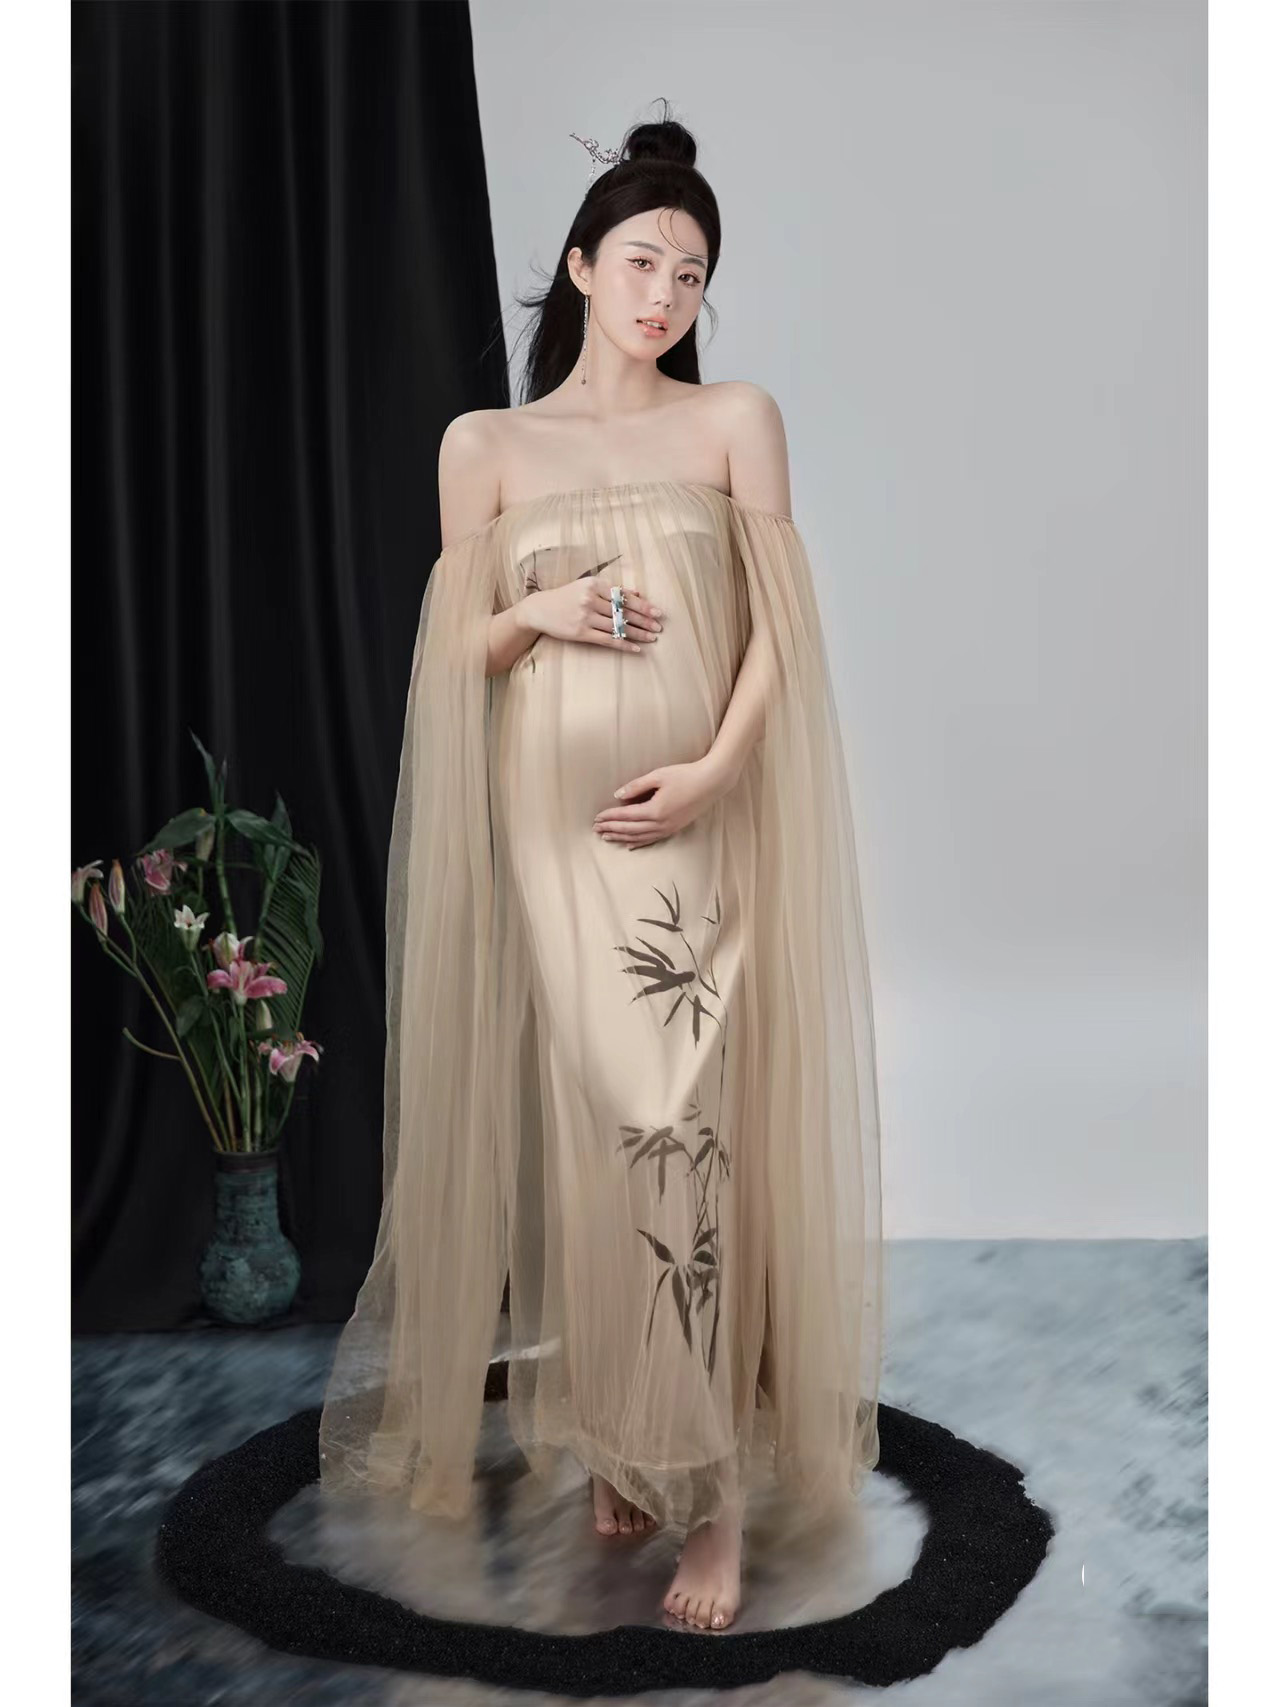 影楼主题孕妇照服装时尚唯美小清新抹胸礼服孕妈大肚拍照摄影衣服